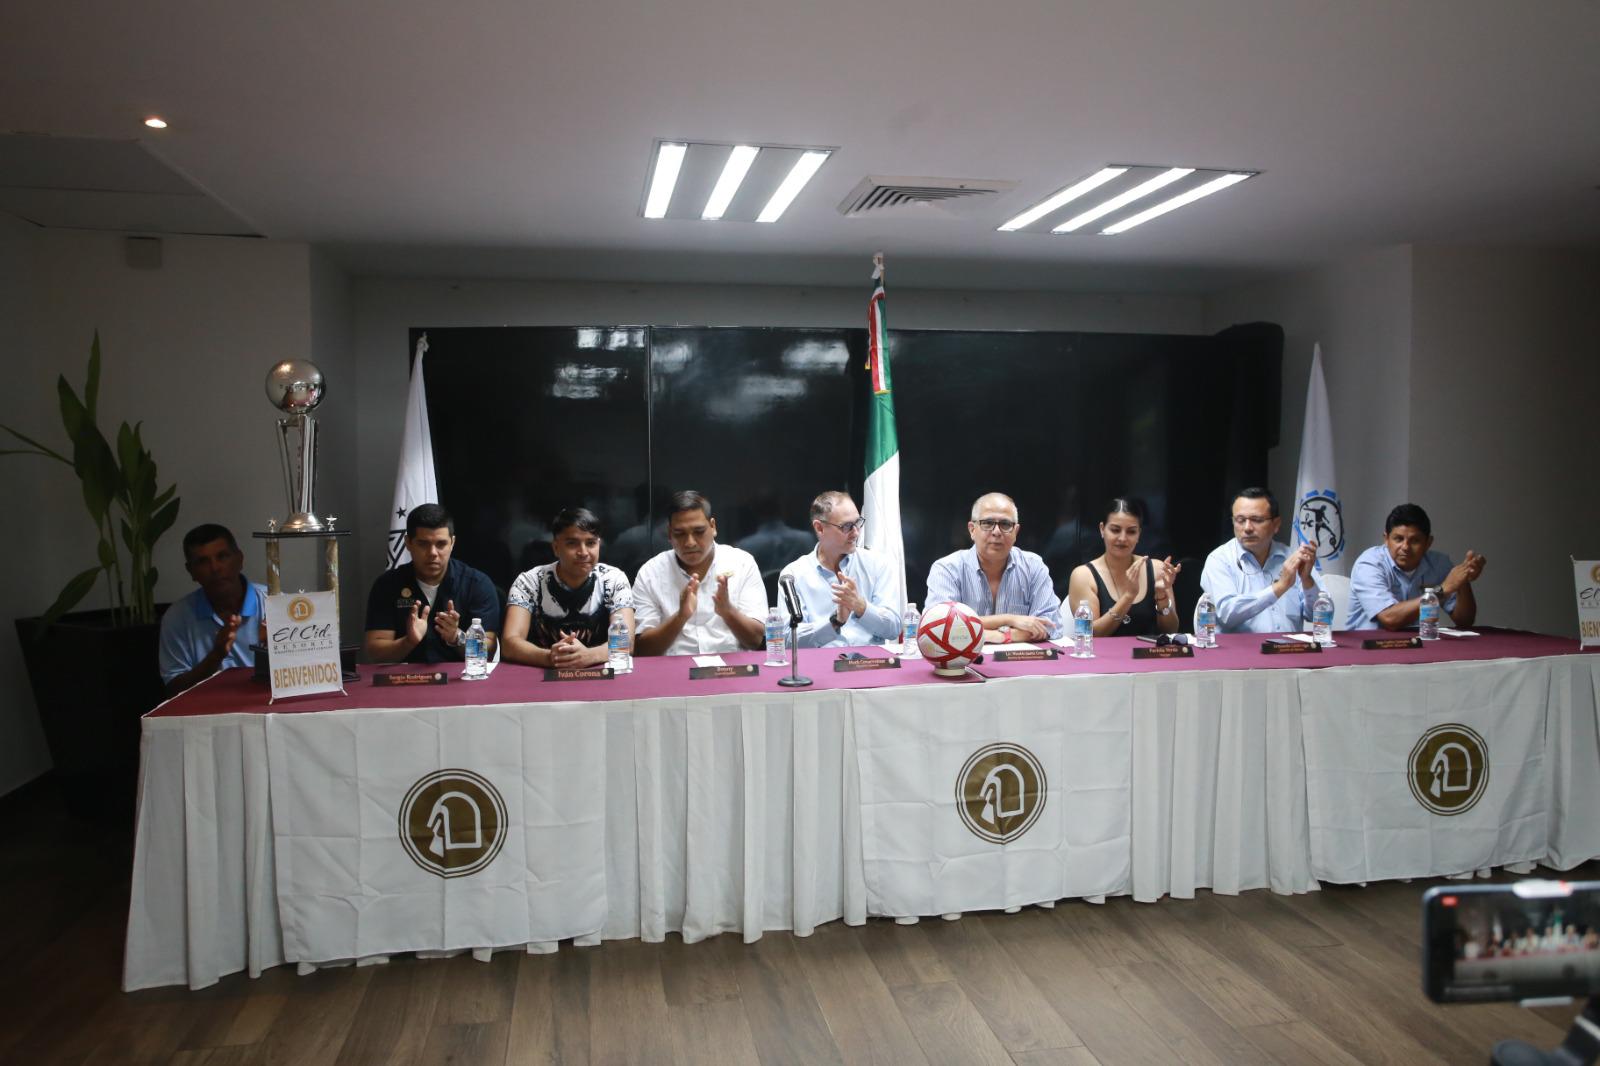 $!Almacén FC y Mantenimiento FC vuelven a chocar por el título del Intramuros de El Cid